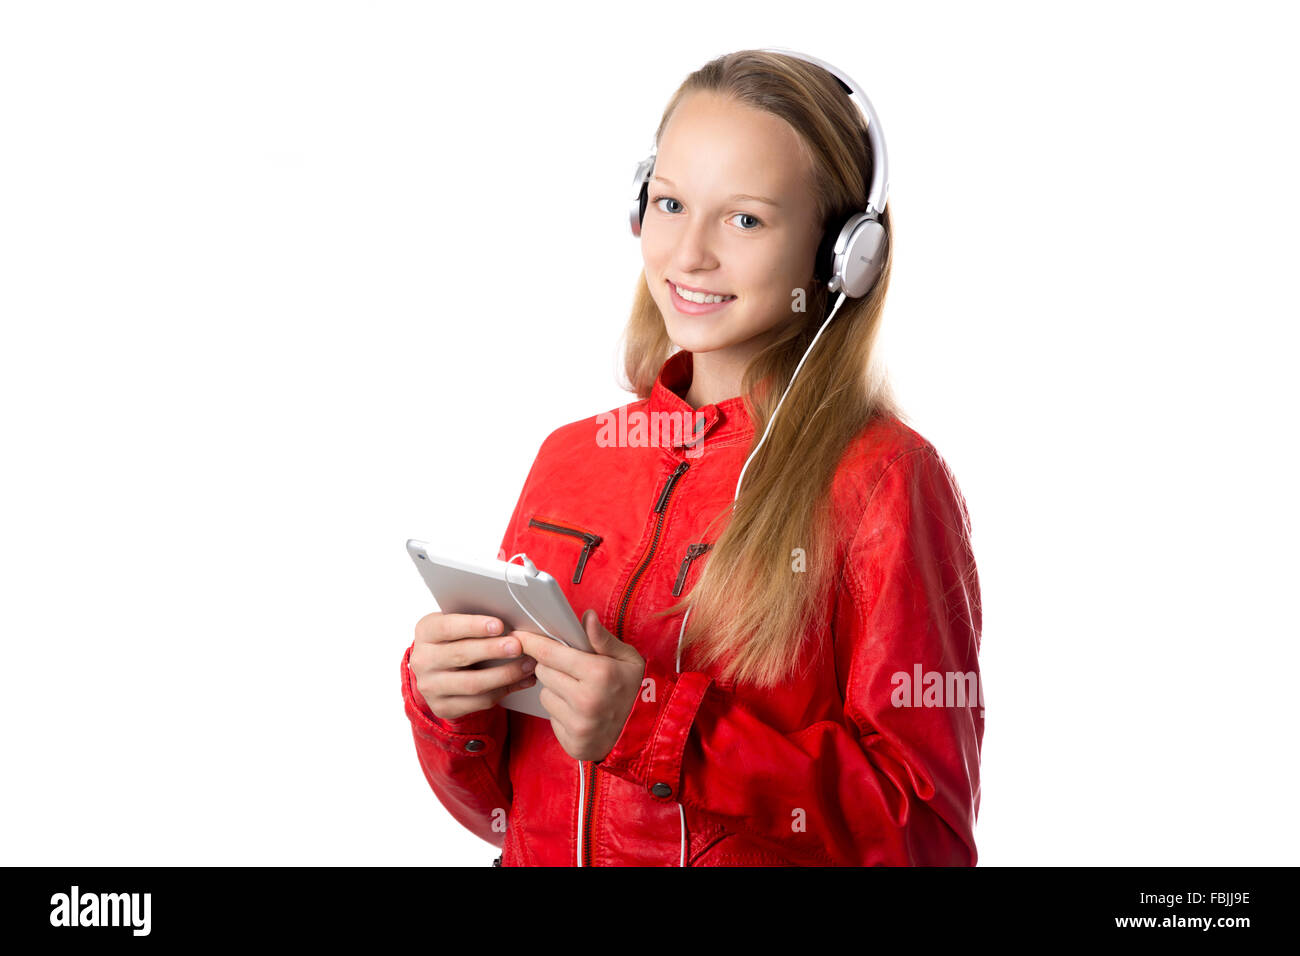 Porträt von glücklich schön lässig Teenager-Mädchen tragen rote Lederjacke und Kopfhörer halten moderne Tablet, freundlich lächelnd Stockfoto